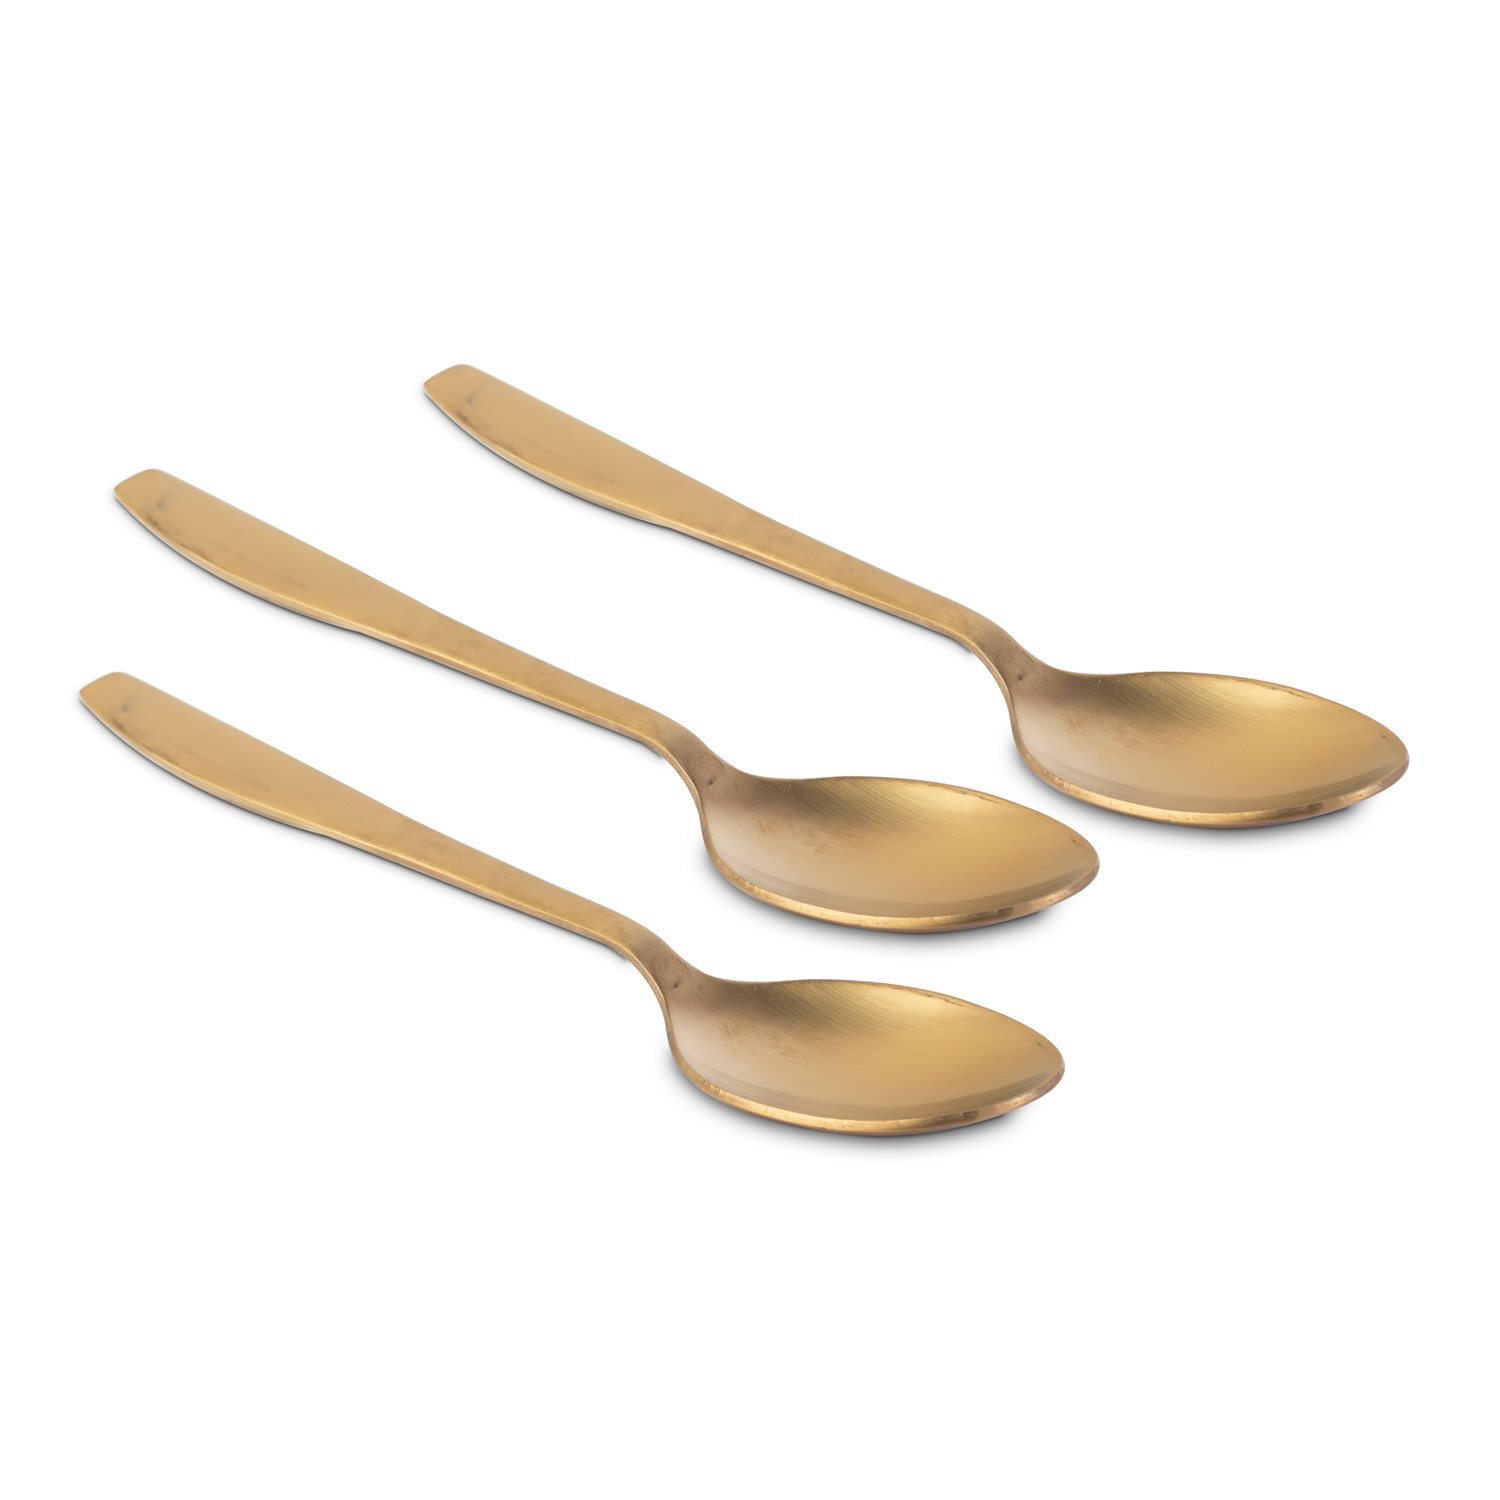 Kitchen Master Gold Dessert Spoon, Km0105, 3Pc Pack, Grande